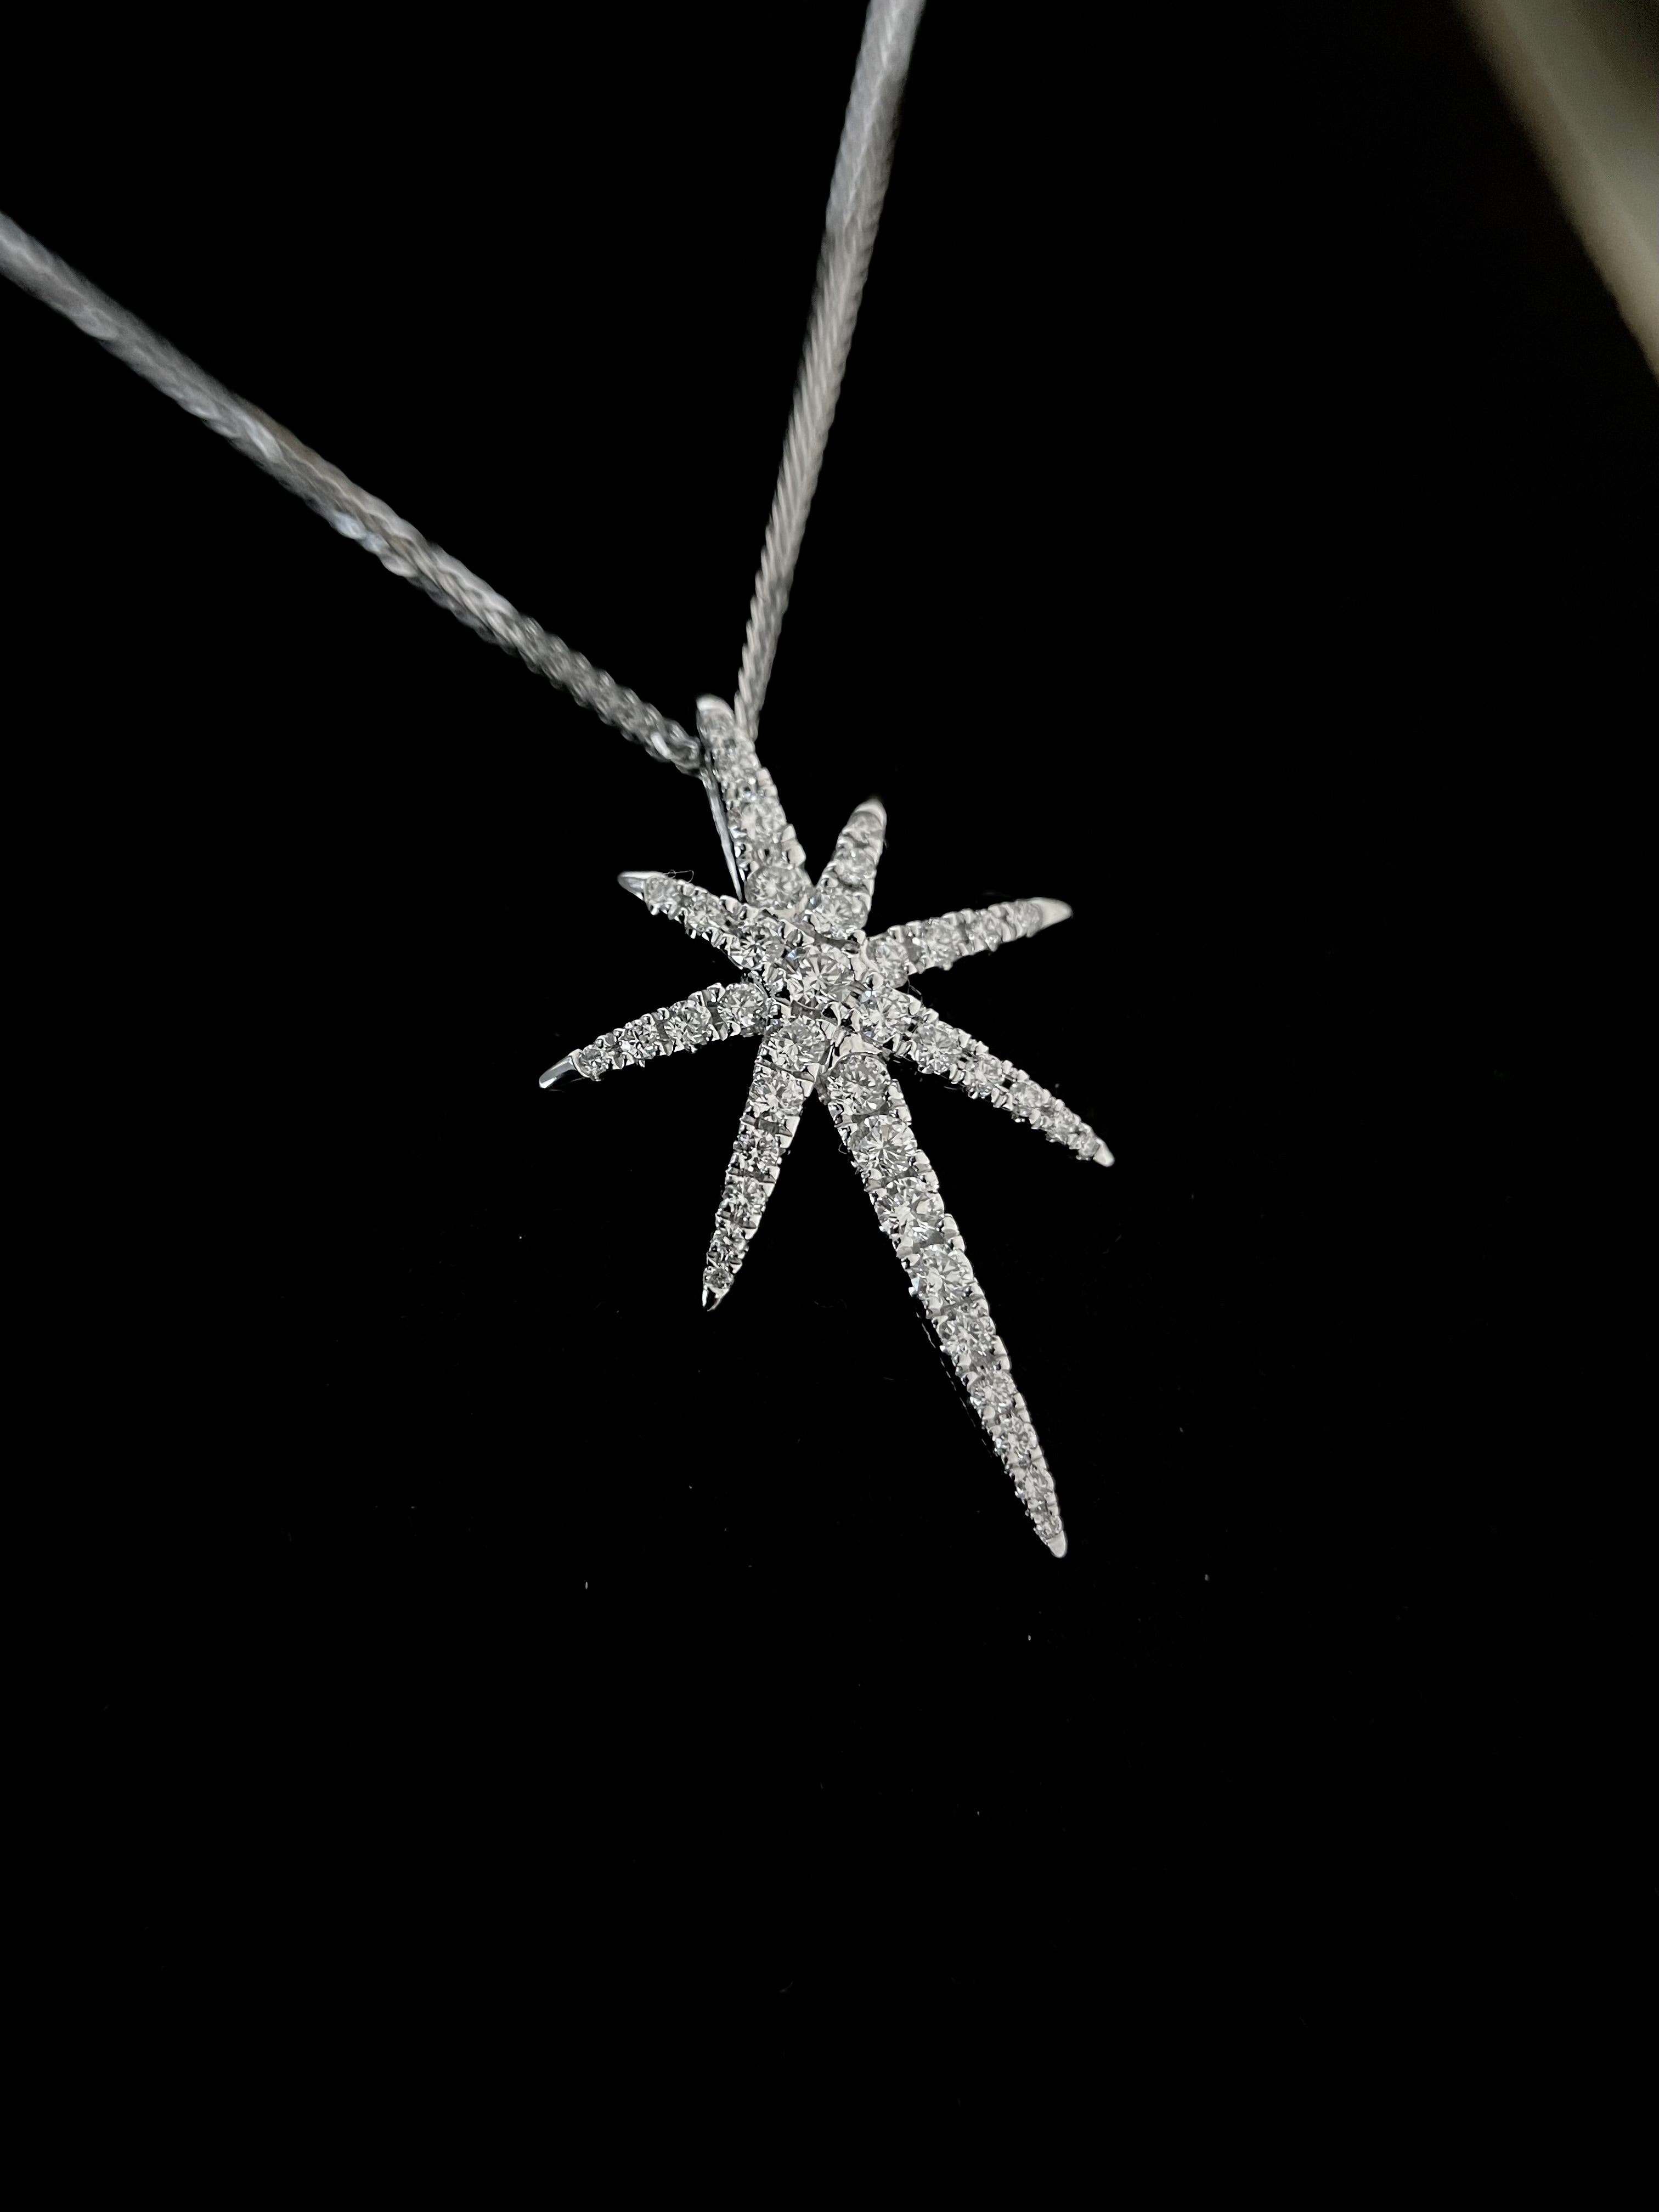 Celestial Diamond Necklace